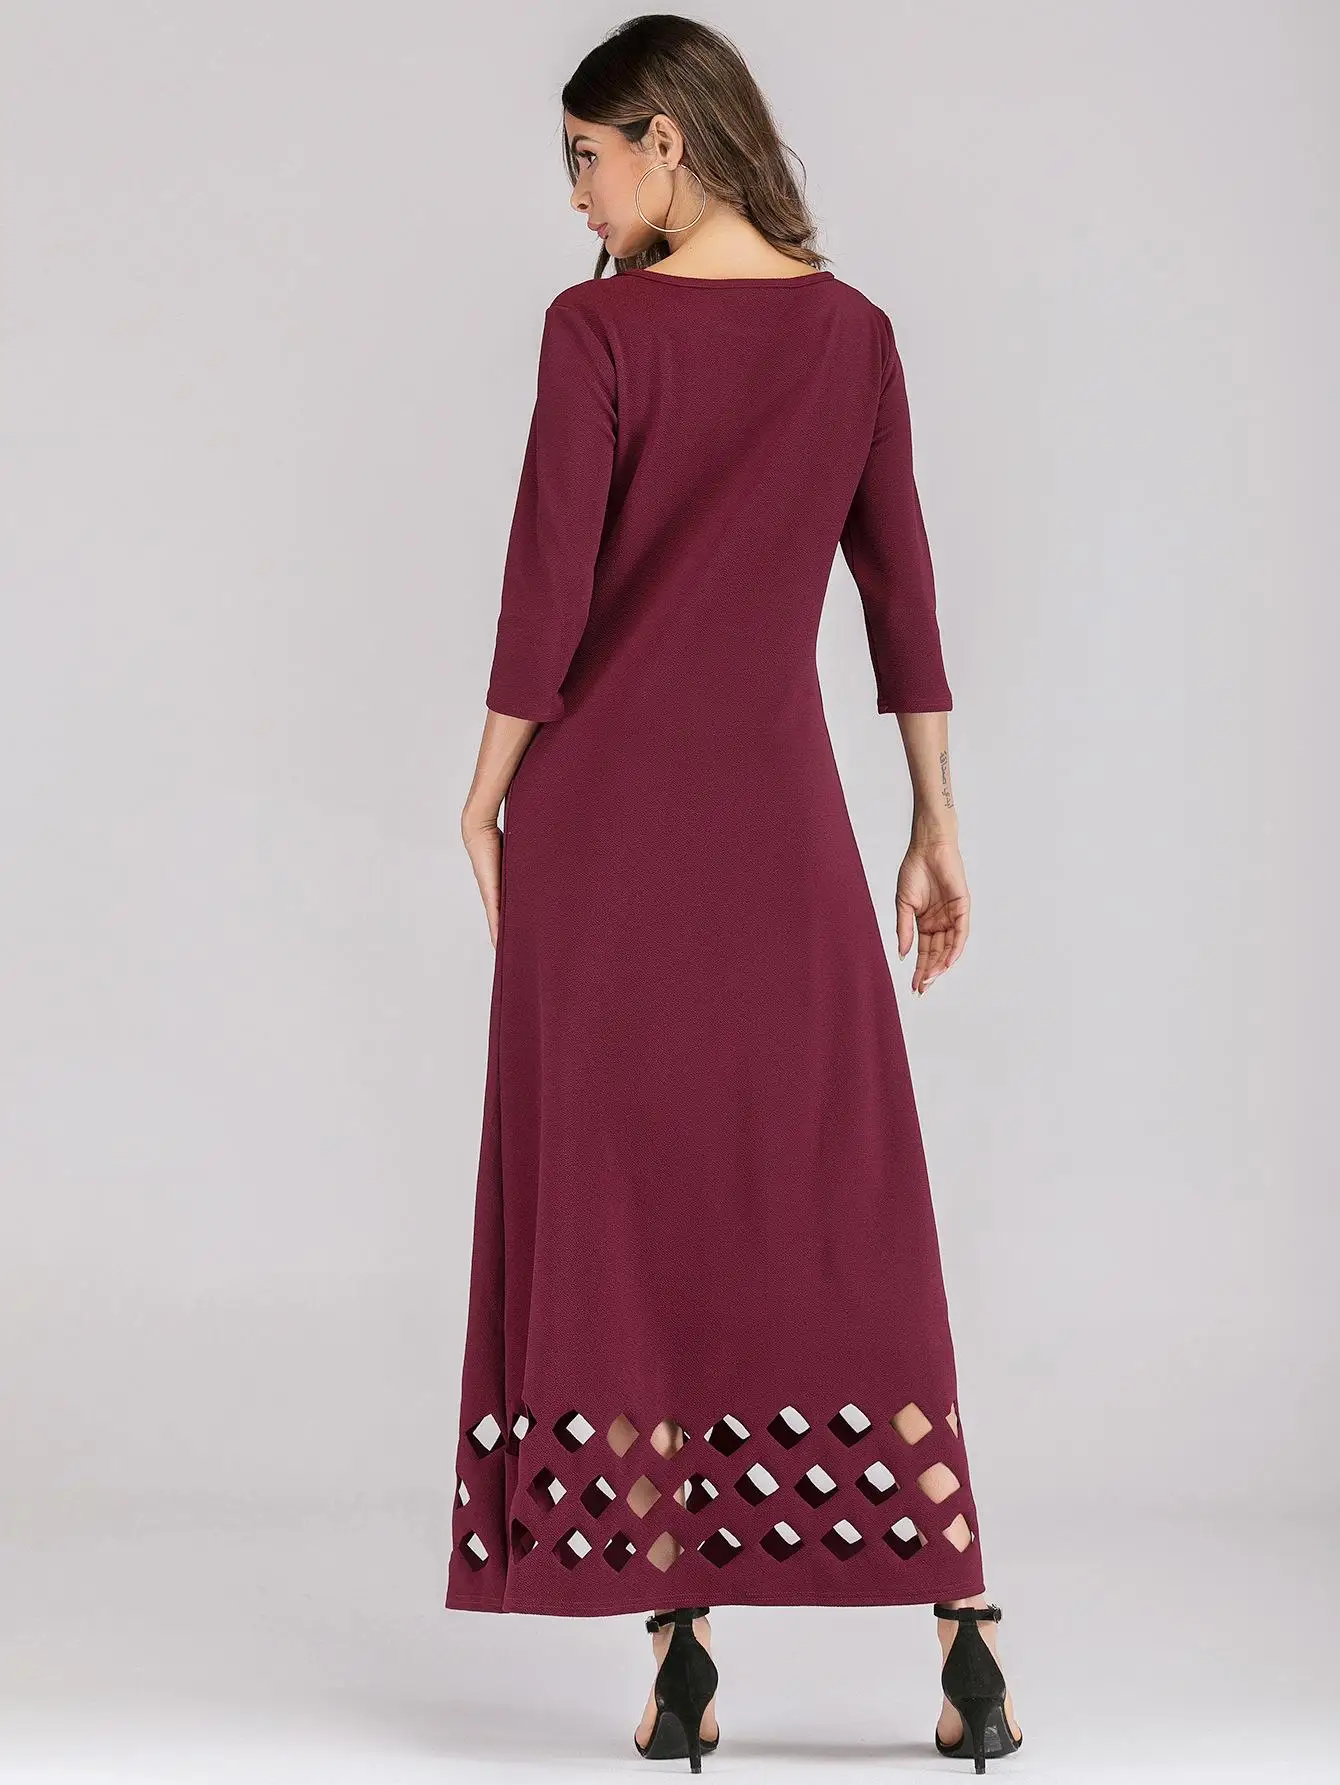 Женское длинное платье трапециевидной формы с вырезами, Осенний Повседневный кафтан, исламское платье, тонкий костюм цвета красного вина